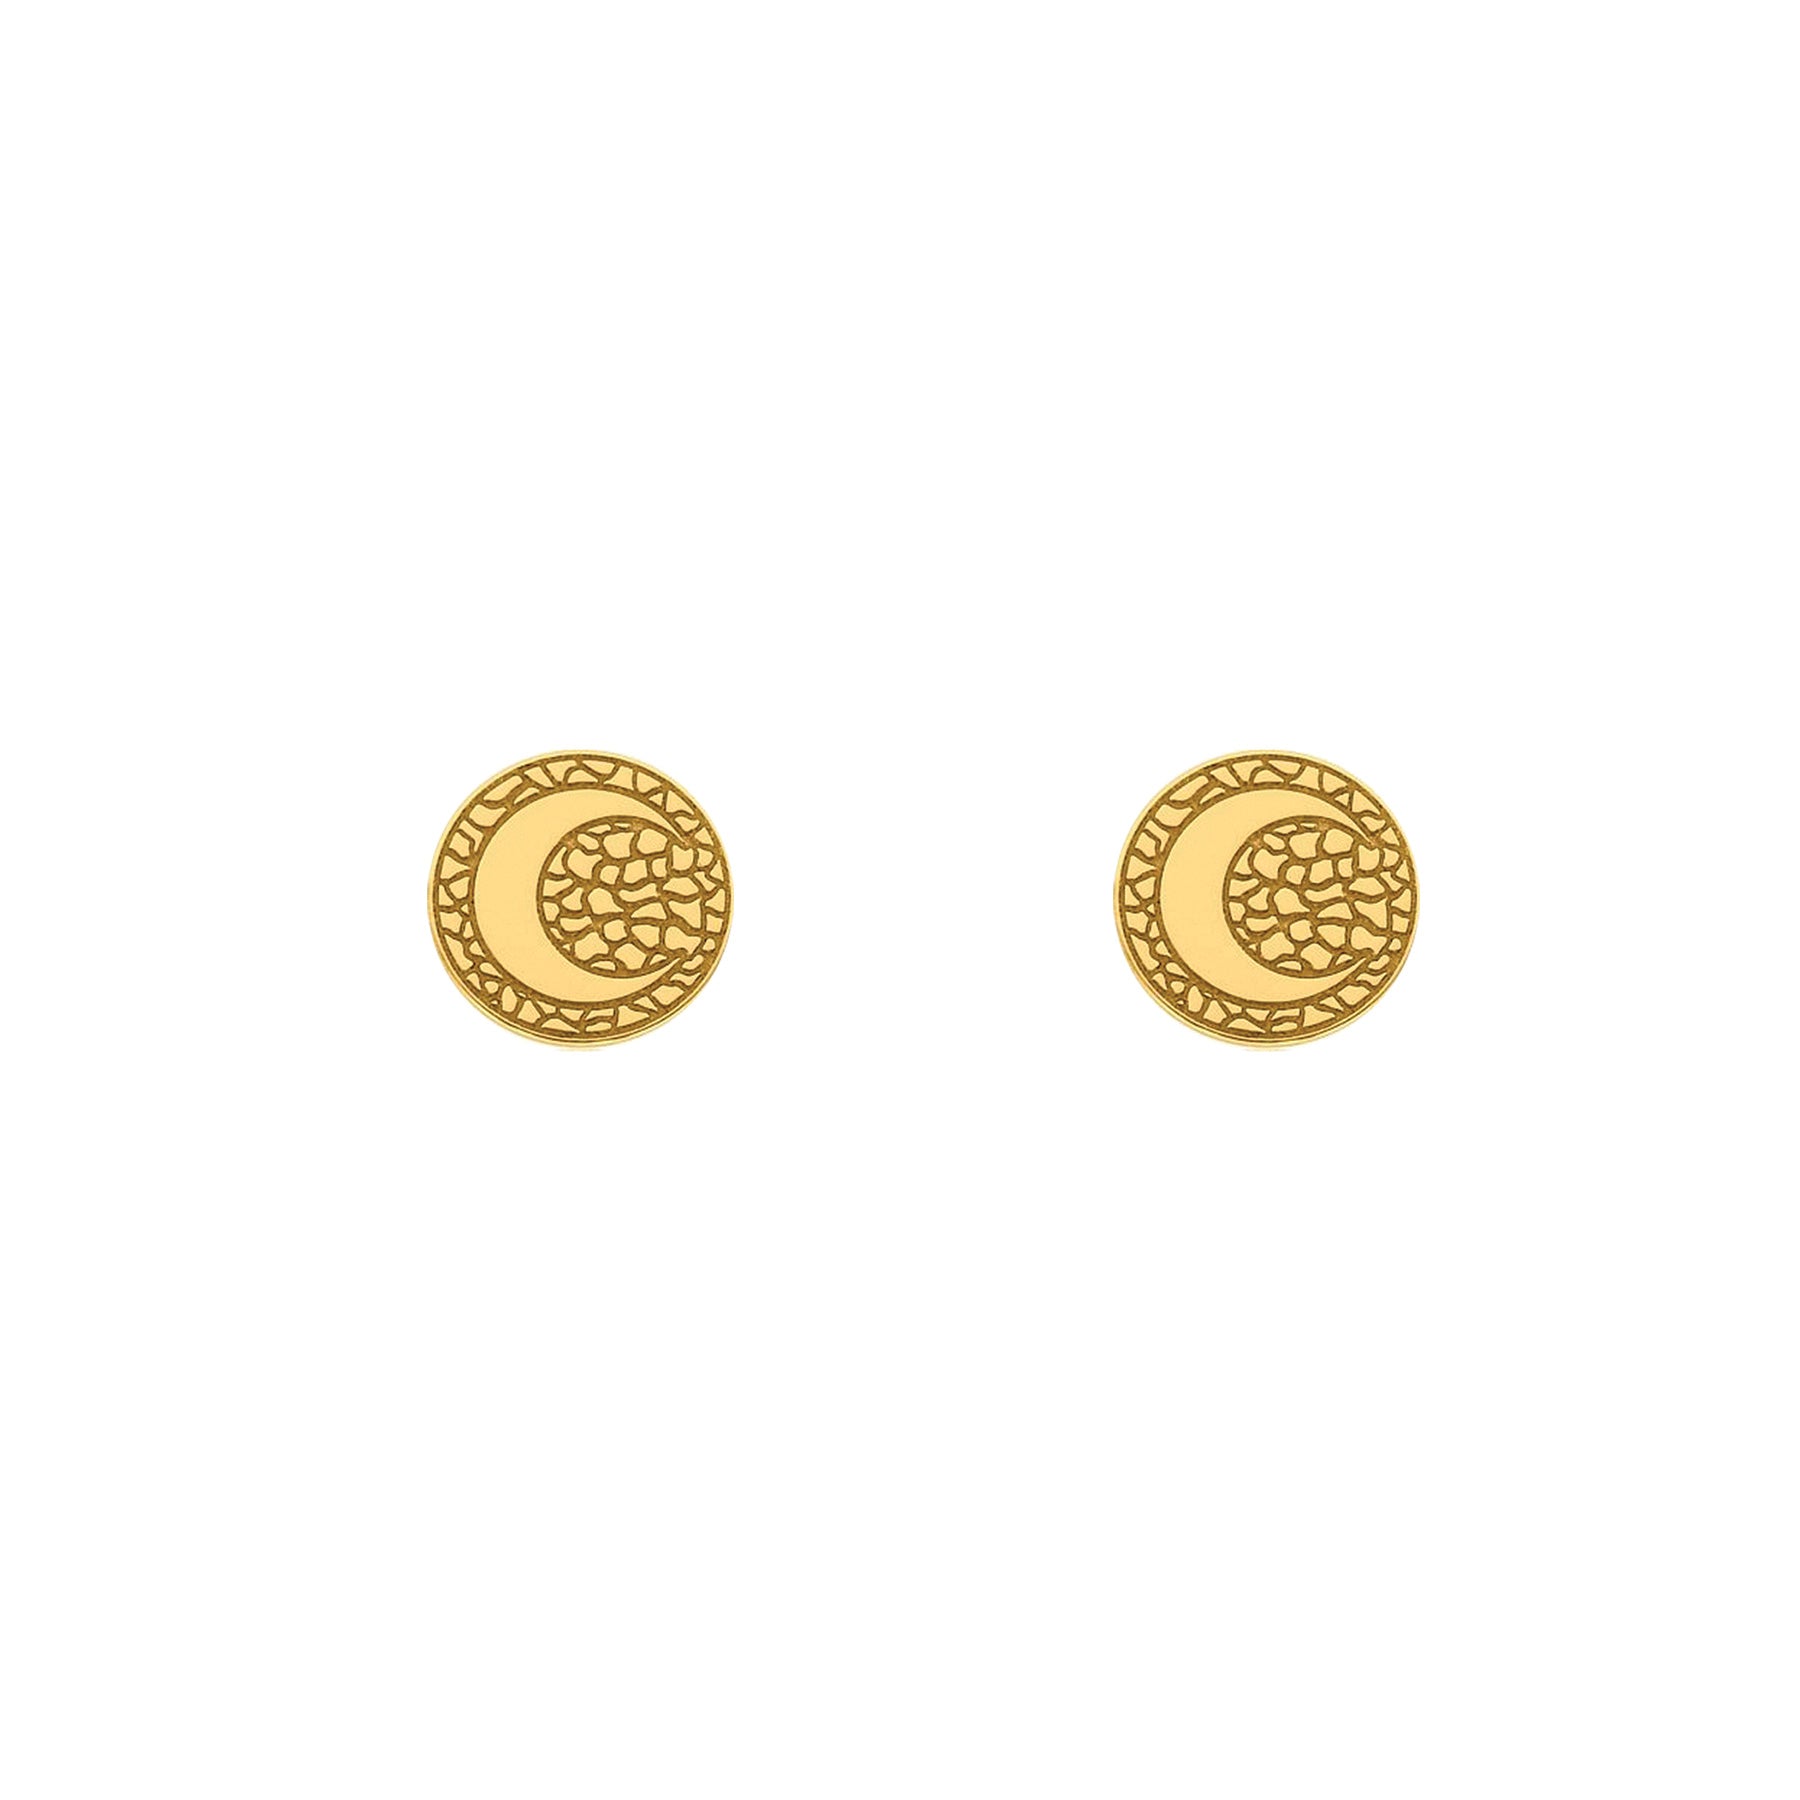 Gold moon stud earrings